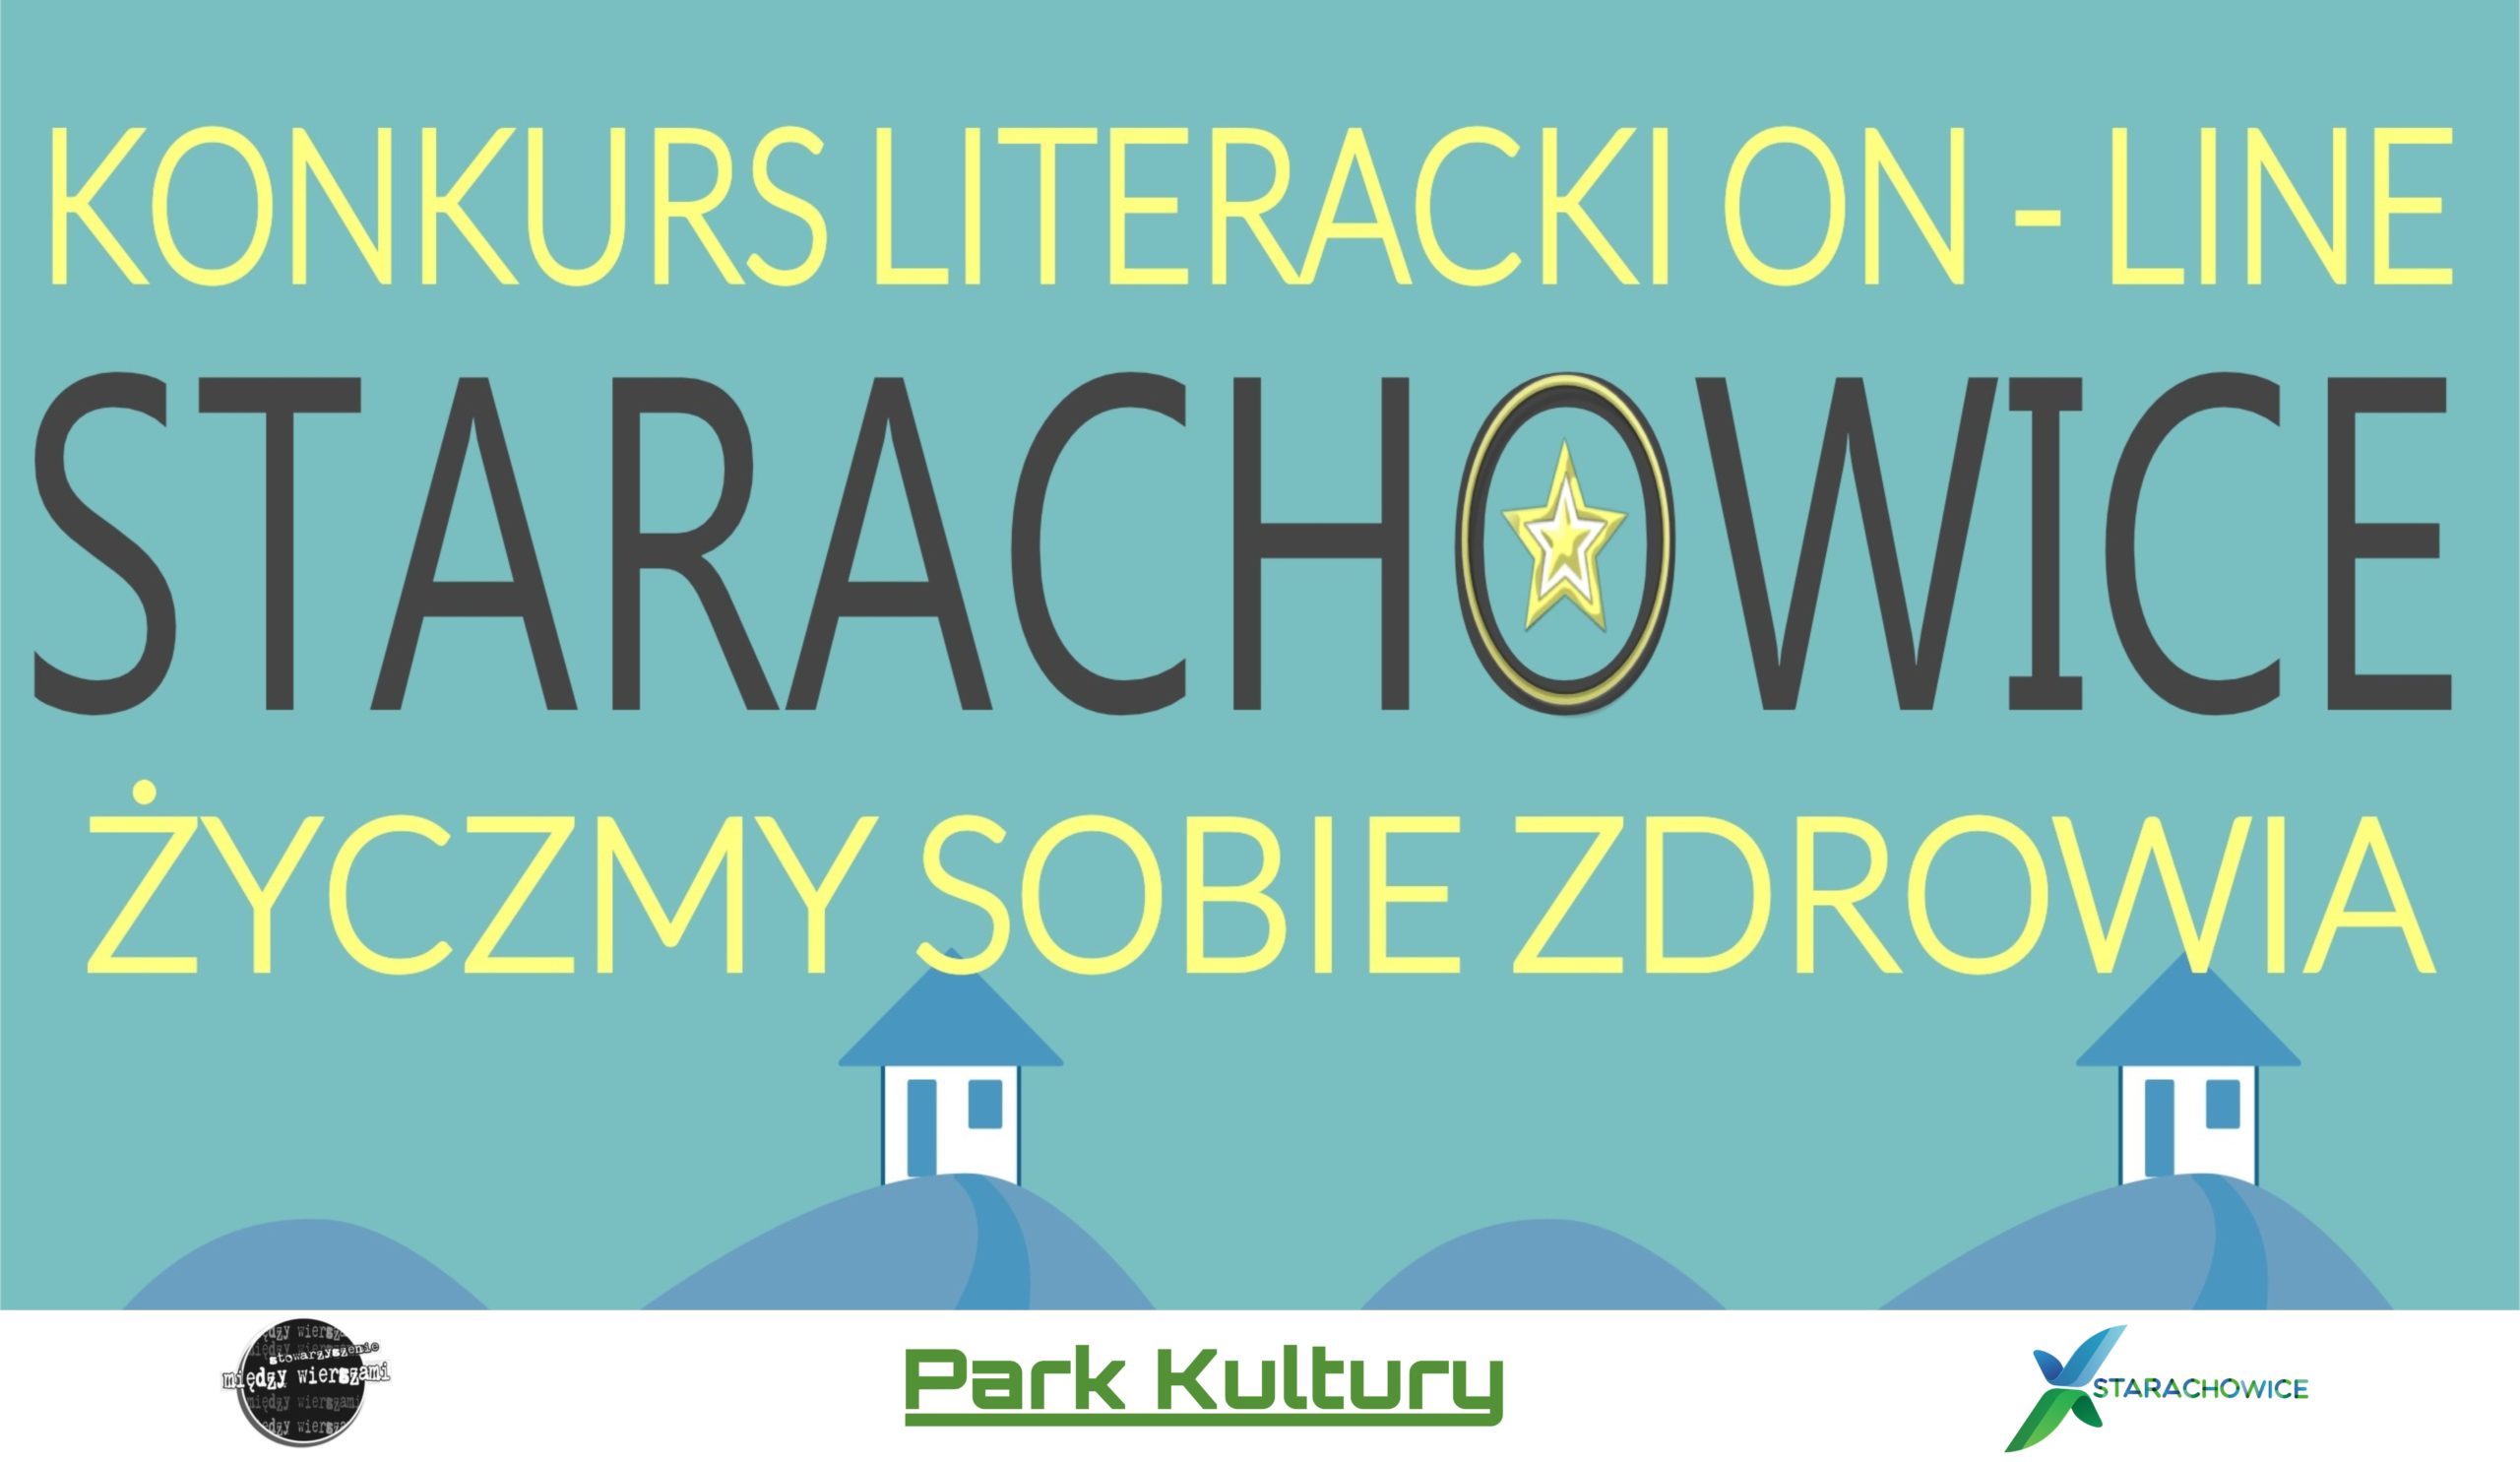 Werdykt konkursu literackiego “Przystanek Starachowice – życzmy sobie zdrowia”